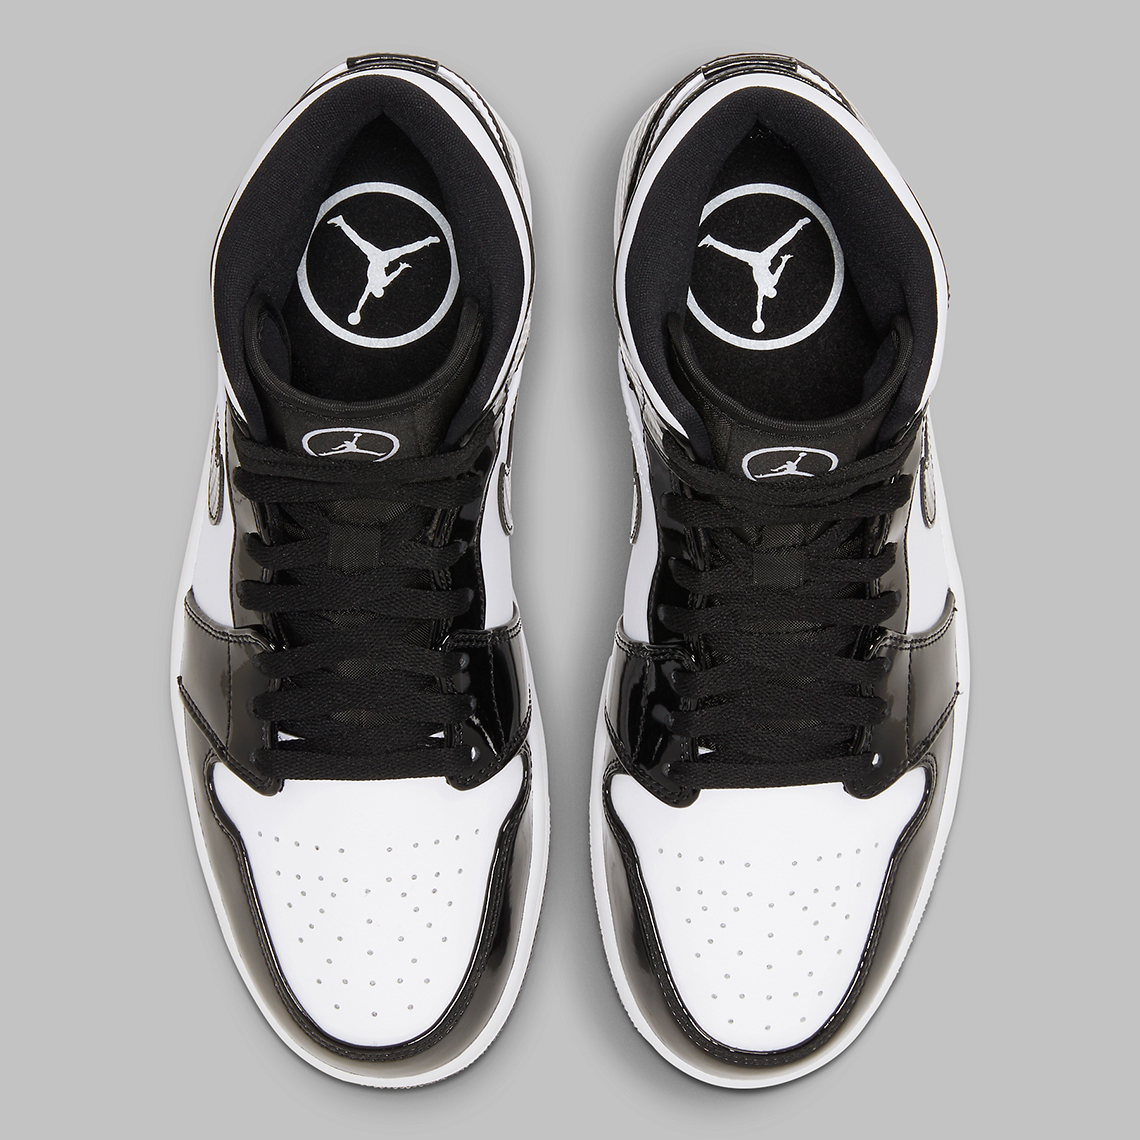 gardin Landbrugs Behov for Air Jordan 1 Mid Carbon Fiber DD1649-001 Release Info | SneakerNews.com